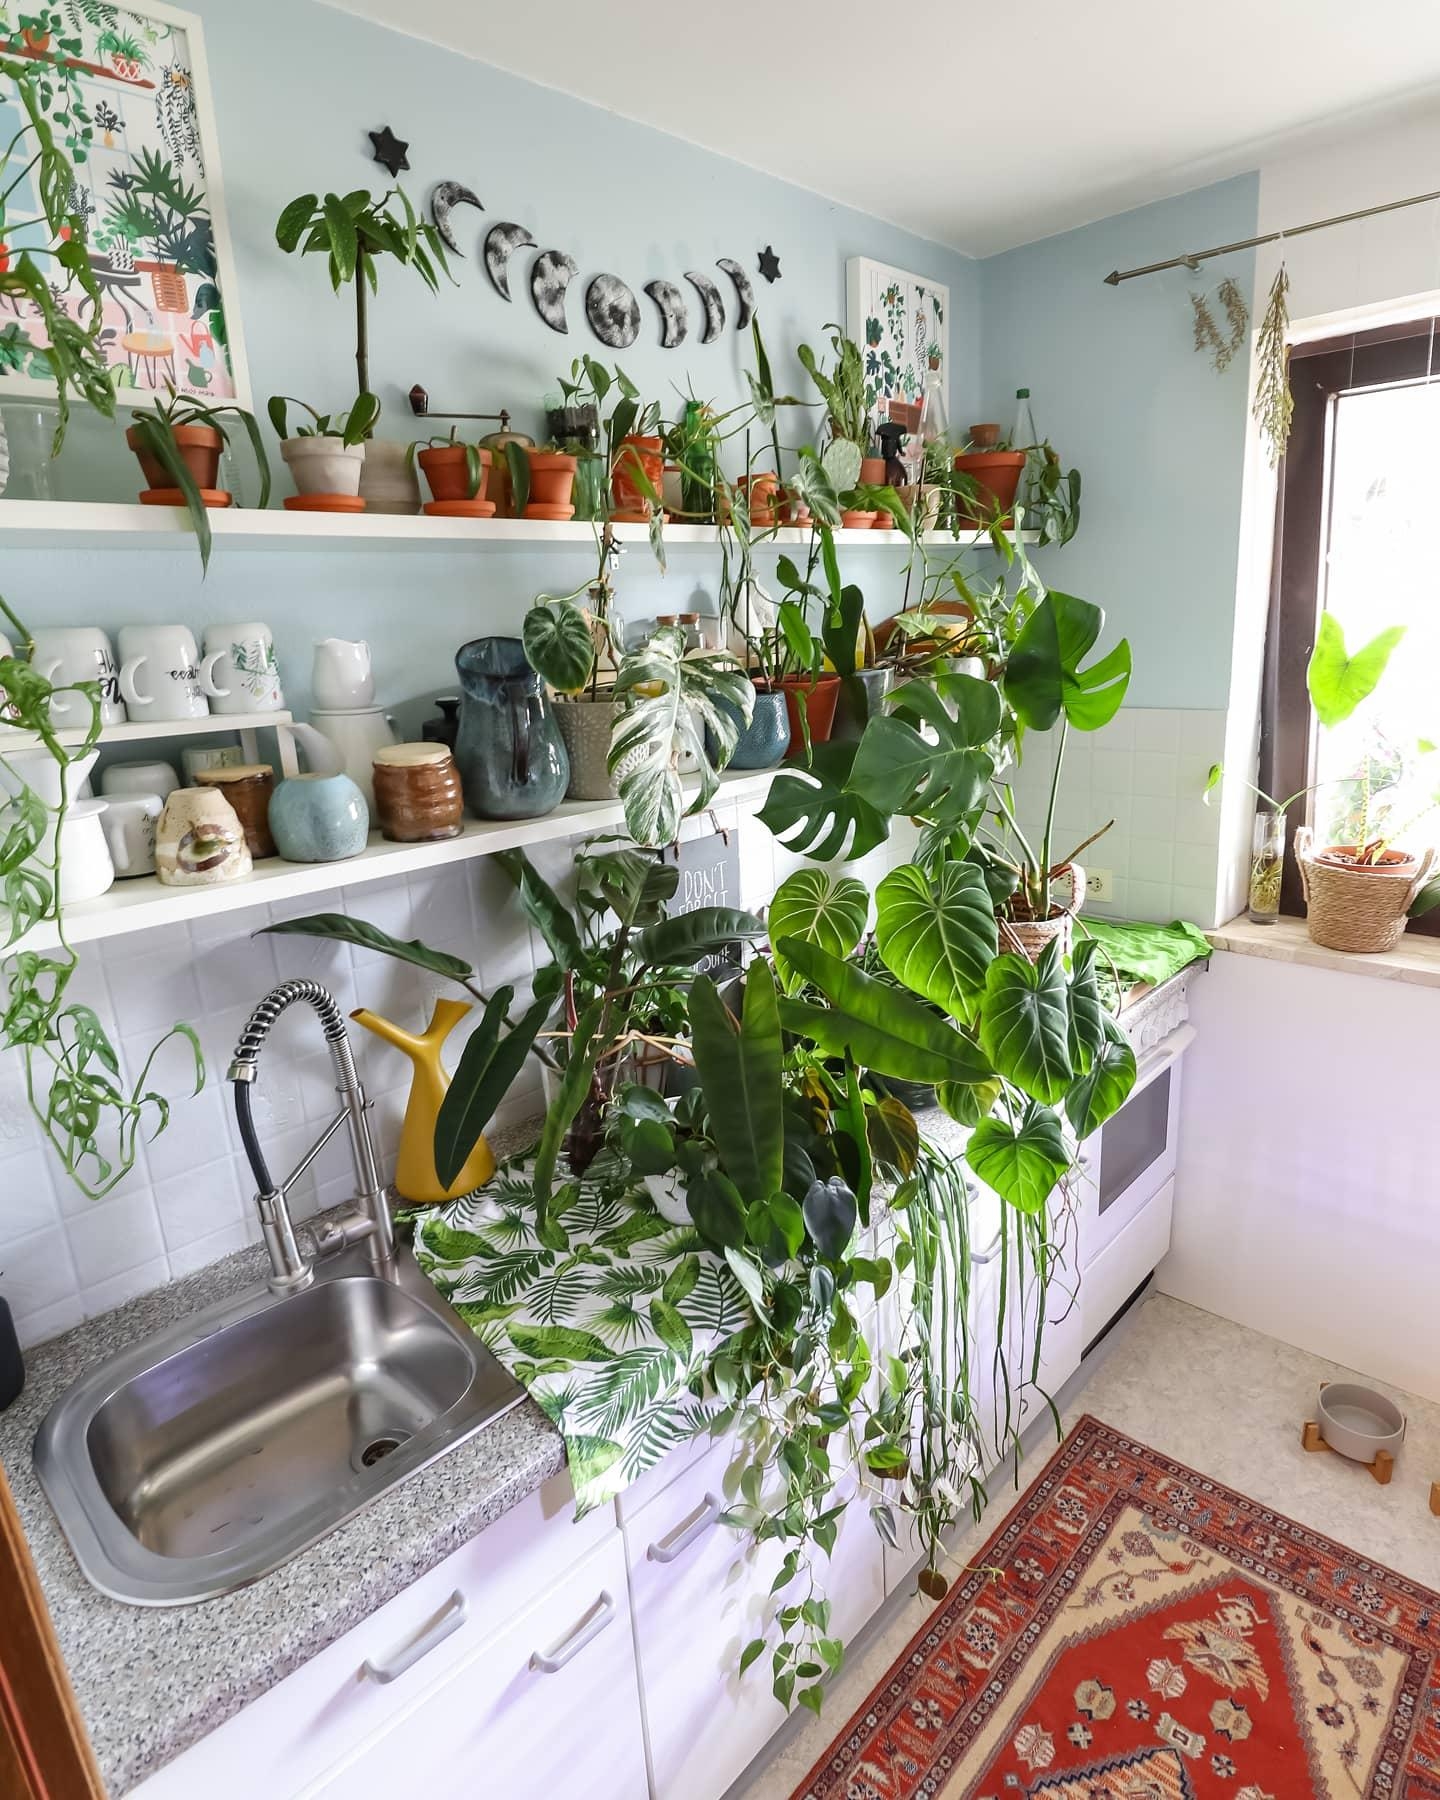 Pflanzen gießen nicht vergessen 💦🪴 #küche #pflanzen #regal #dekoidee #couchstyle 